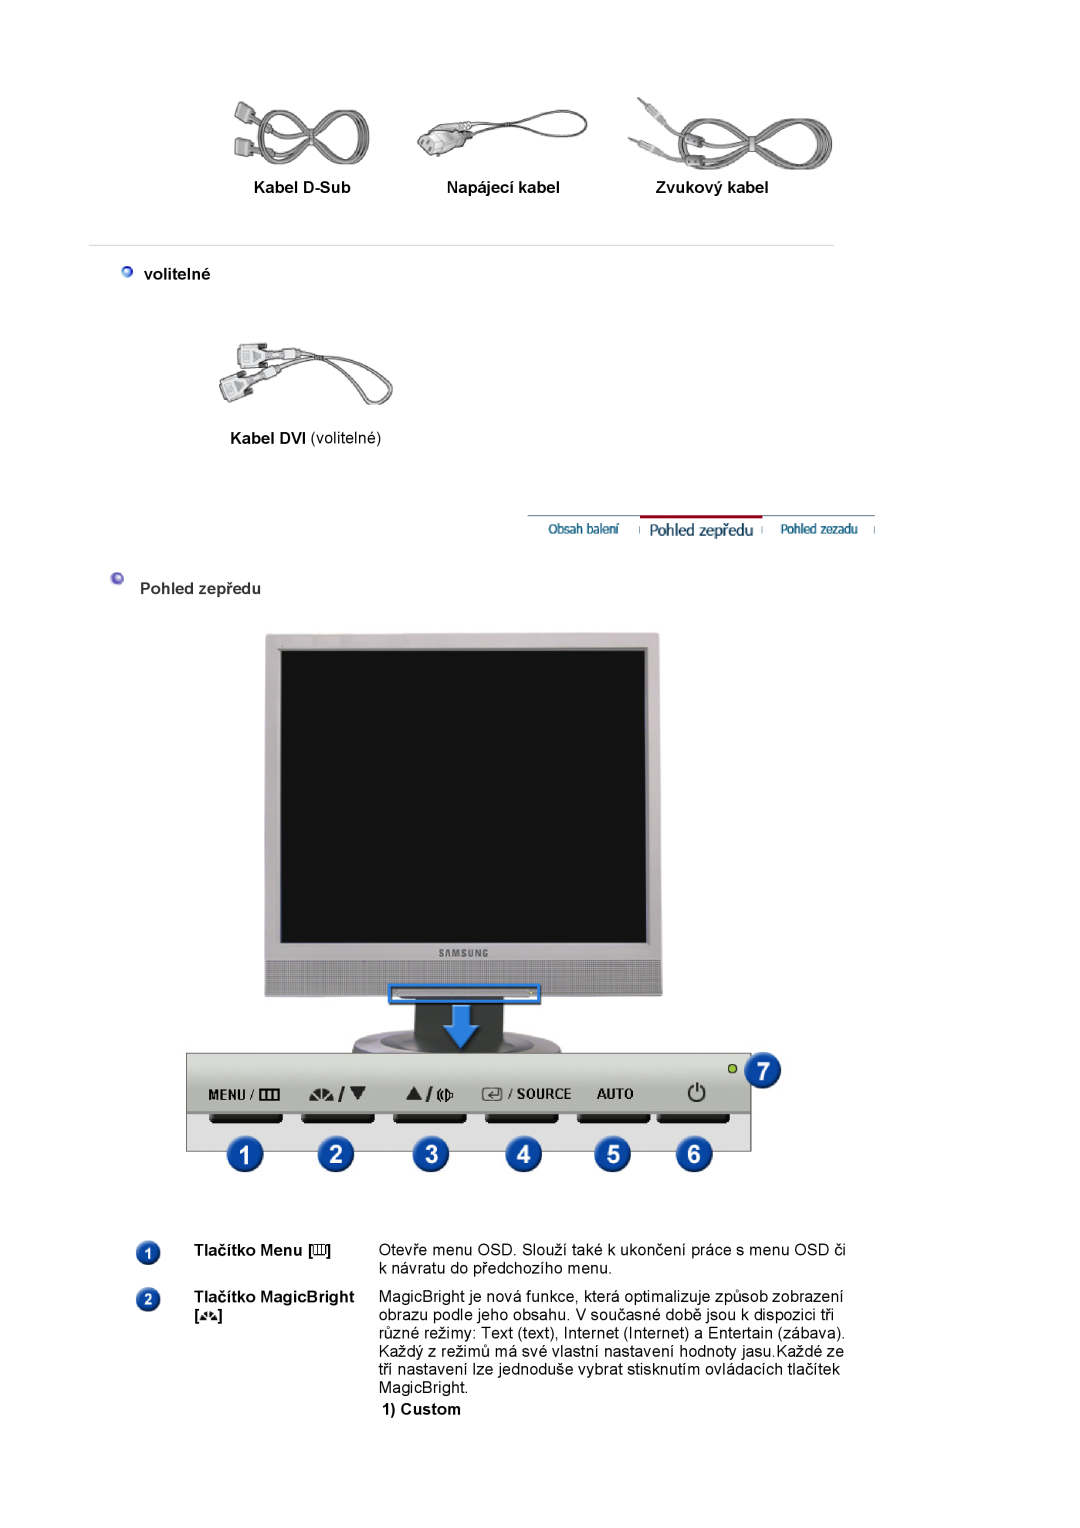 Samsung LS19MJSTS7/EDC, LS17MJSTSE/EDC manual volitelné, Kabel D-Sub, Napájecí kabel, Zvukový kabel, Pohled zepĜedu, Custom 